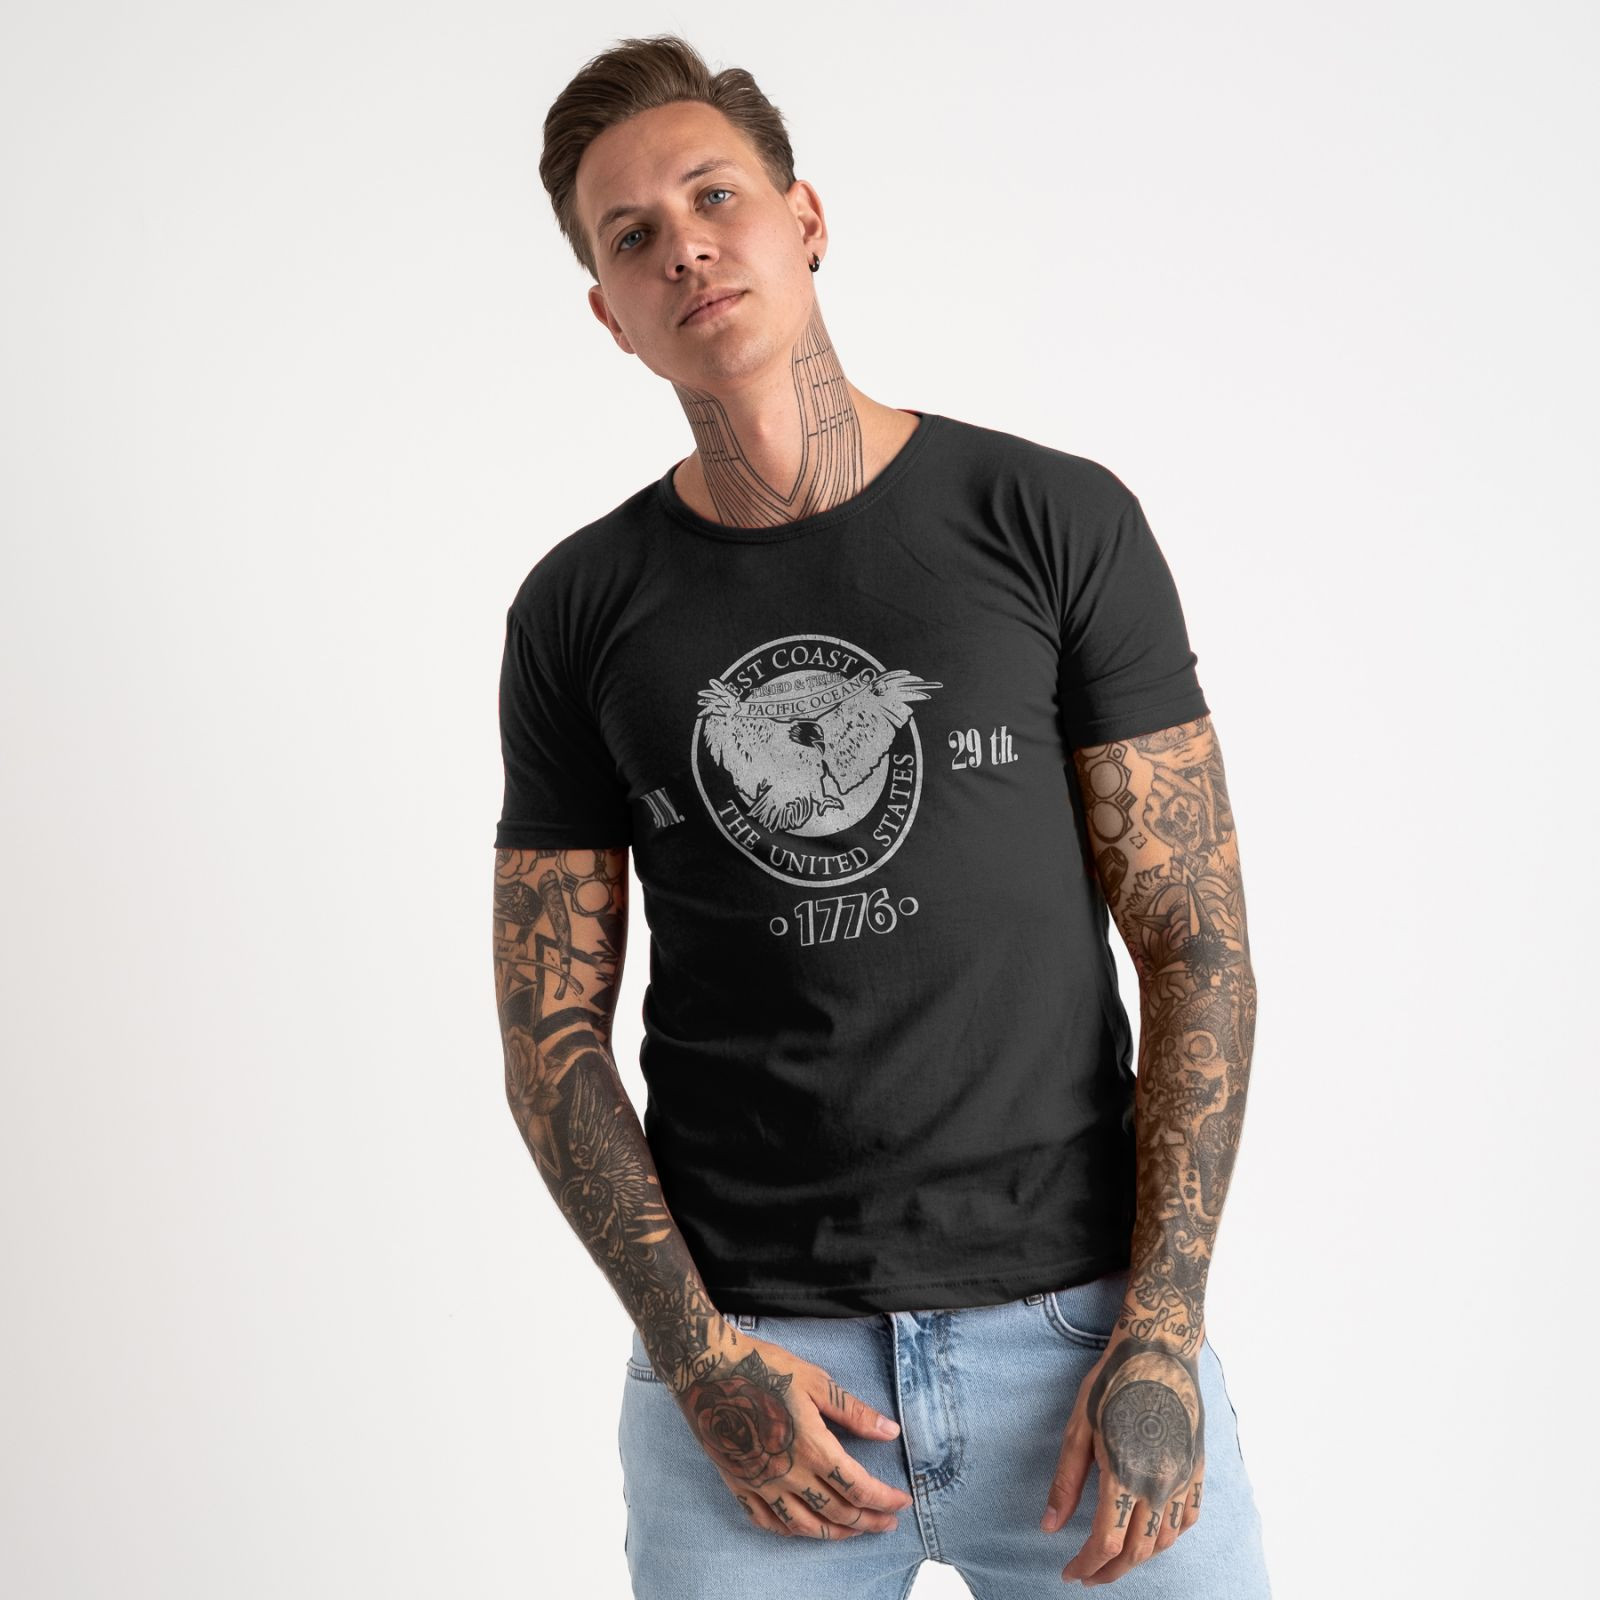 2607-1 черная футболка мужская с принтом (4 ед. размеры: M.L.XL.2XL)